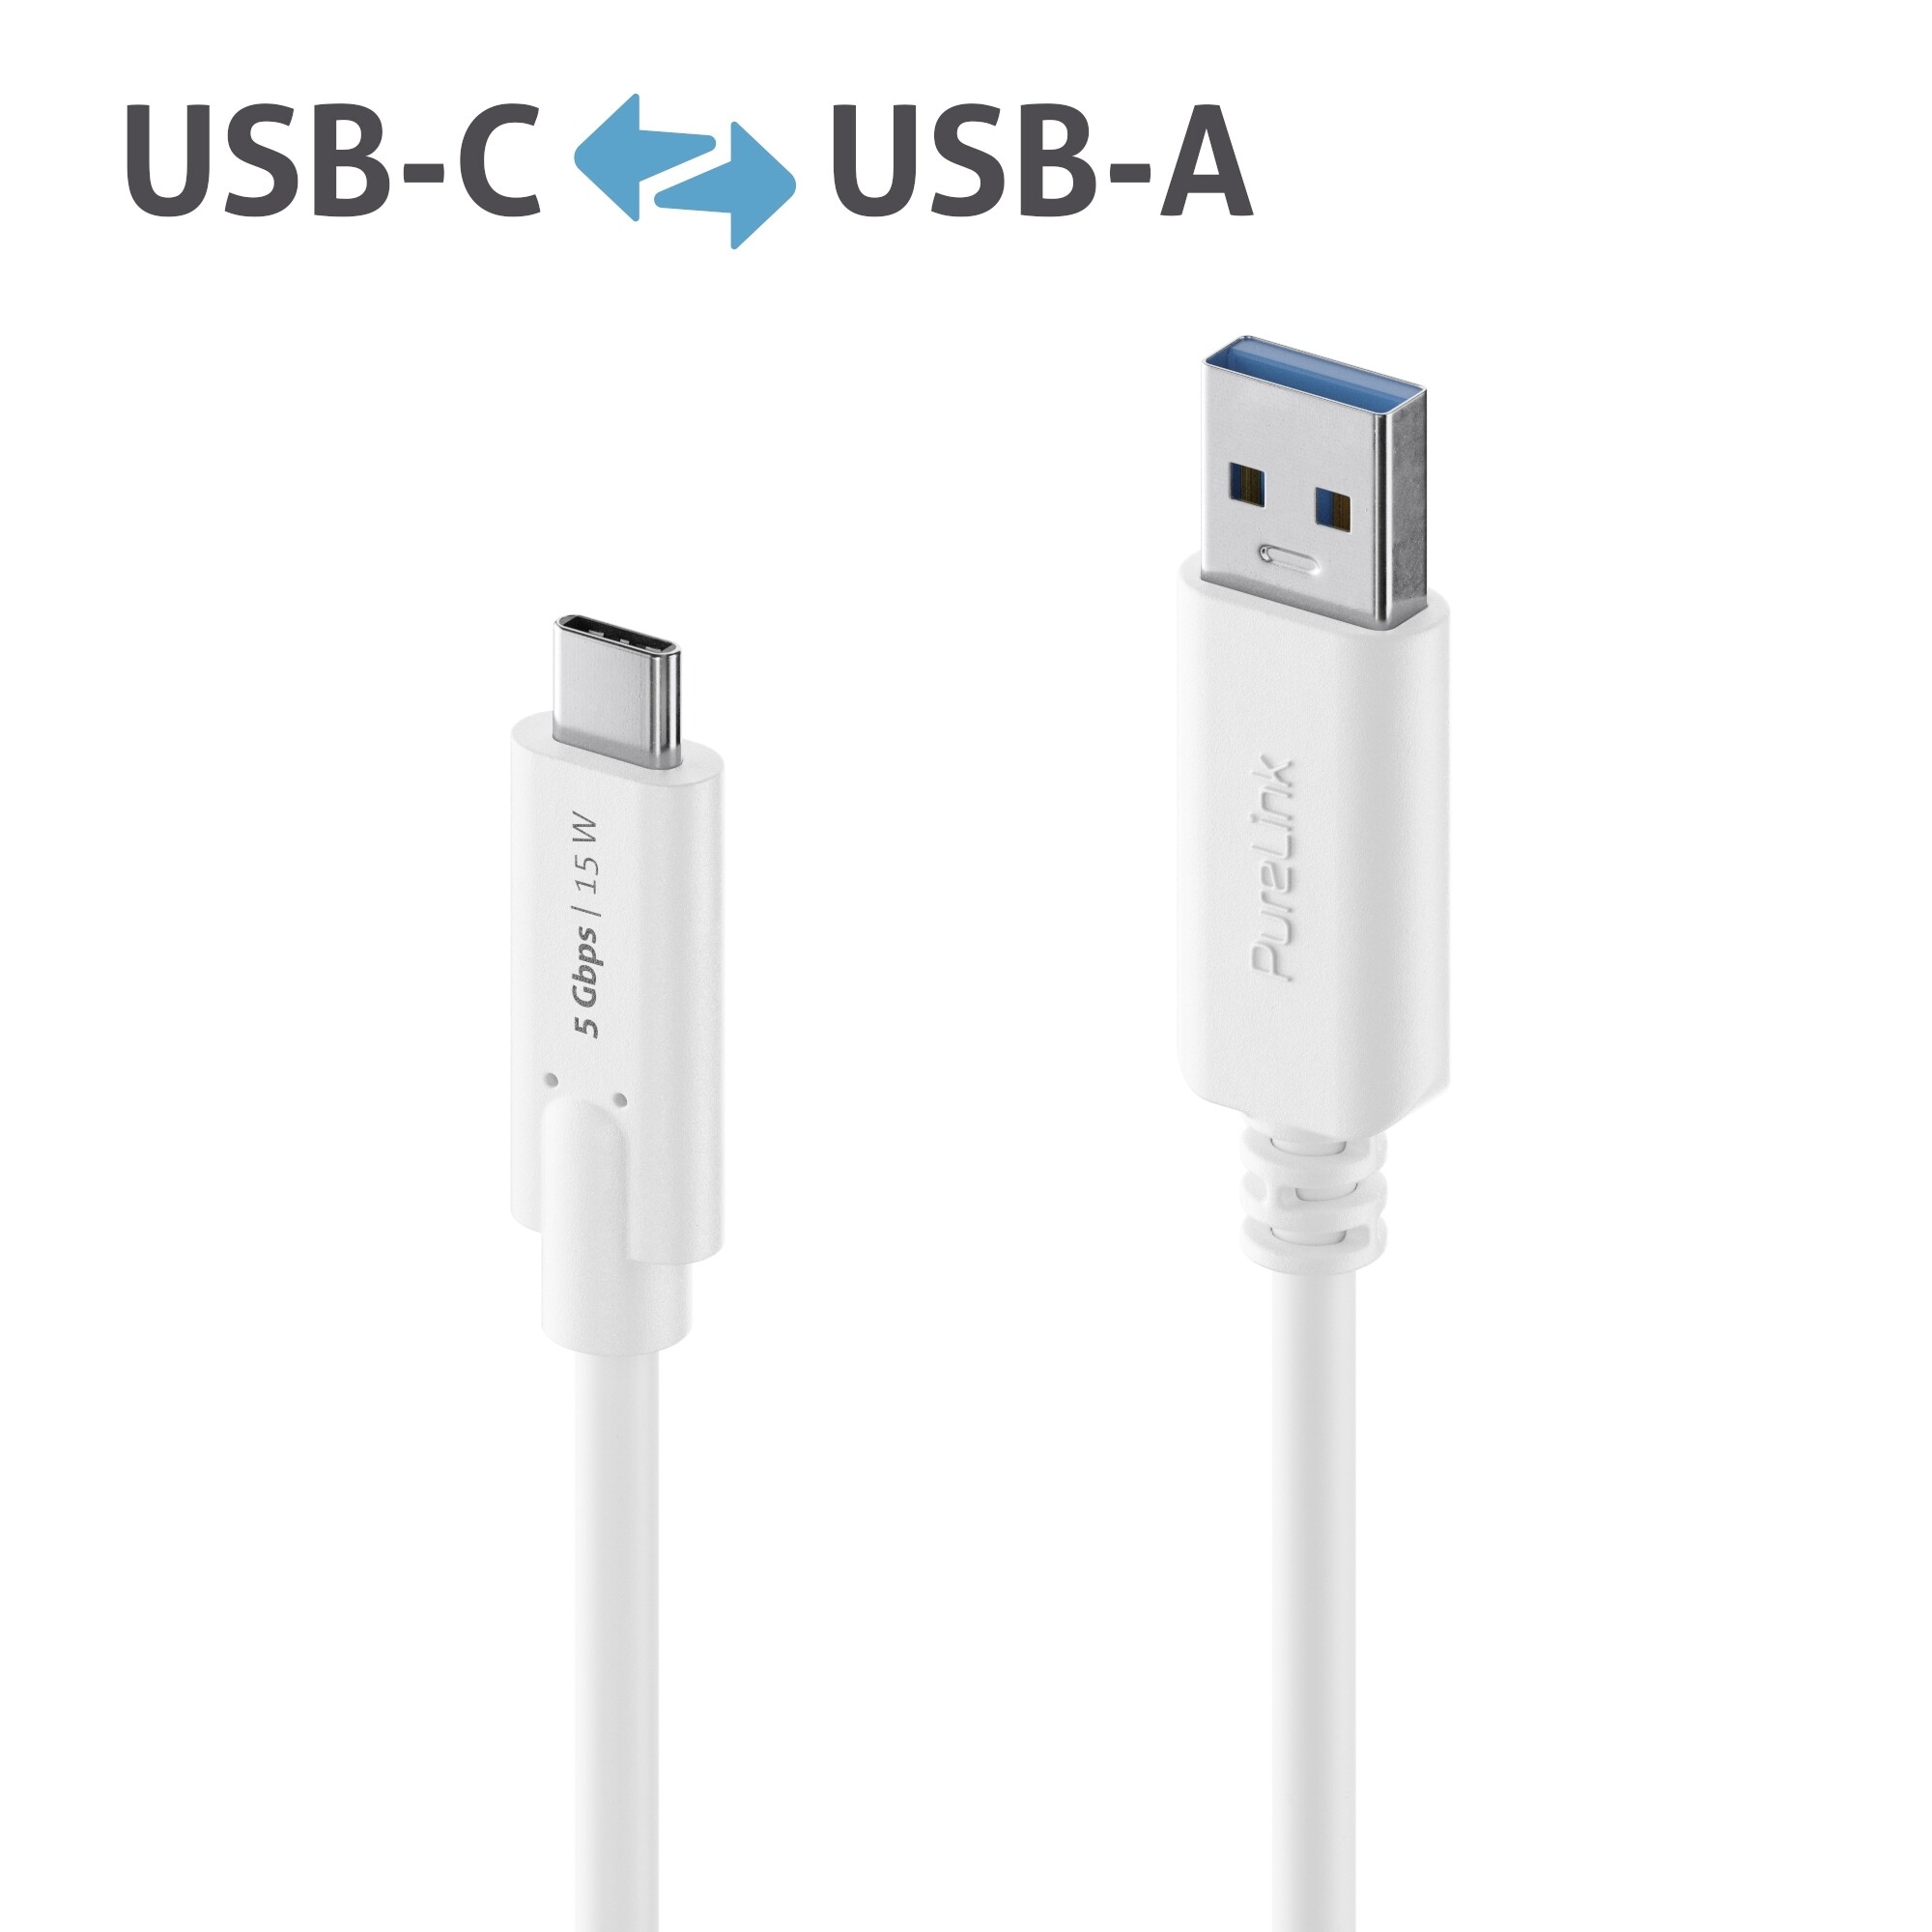 Purelink-IS2600-015-USB-C-auf-USB-A-Kabel-1-5m-weiss